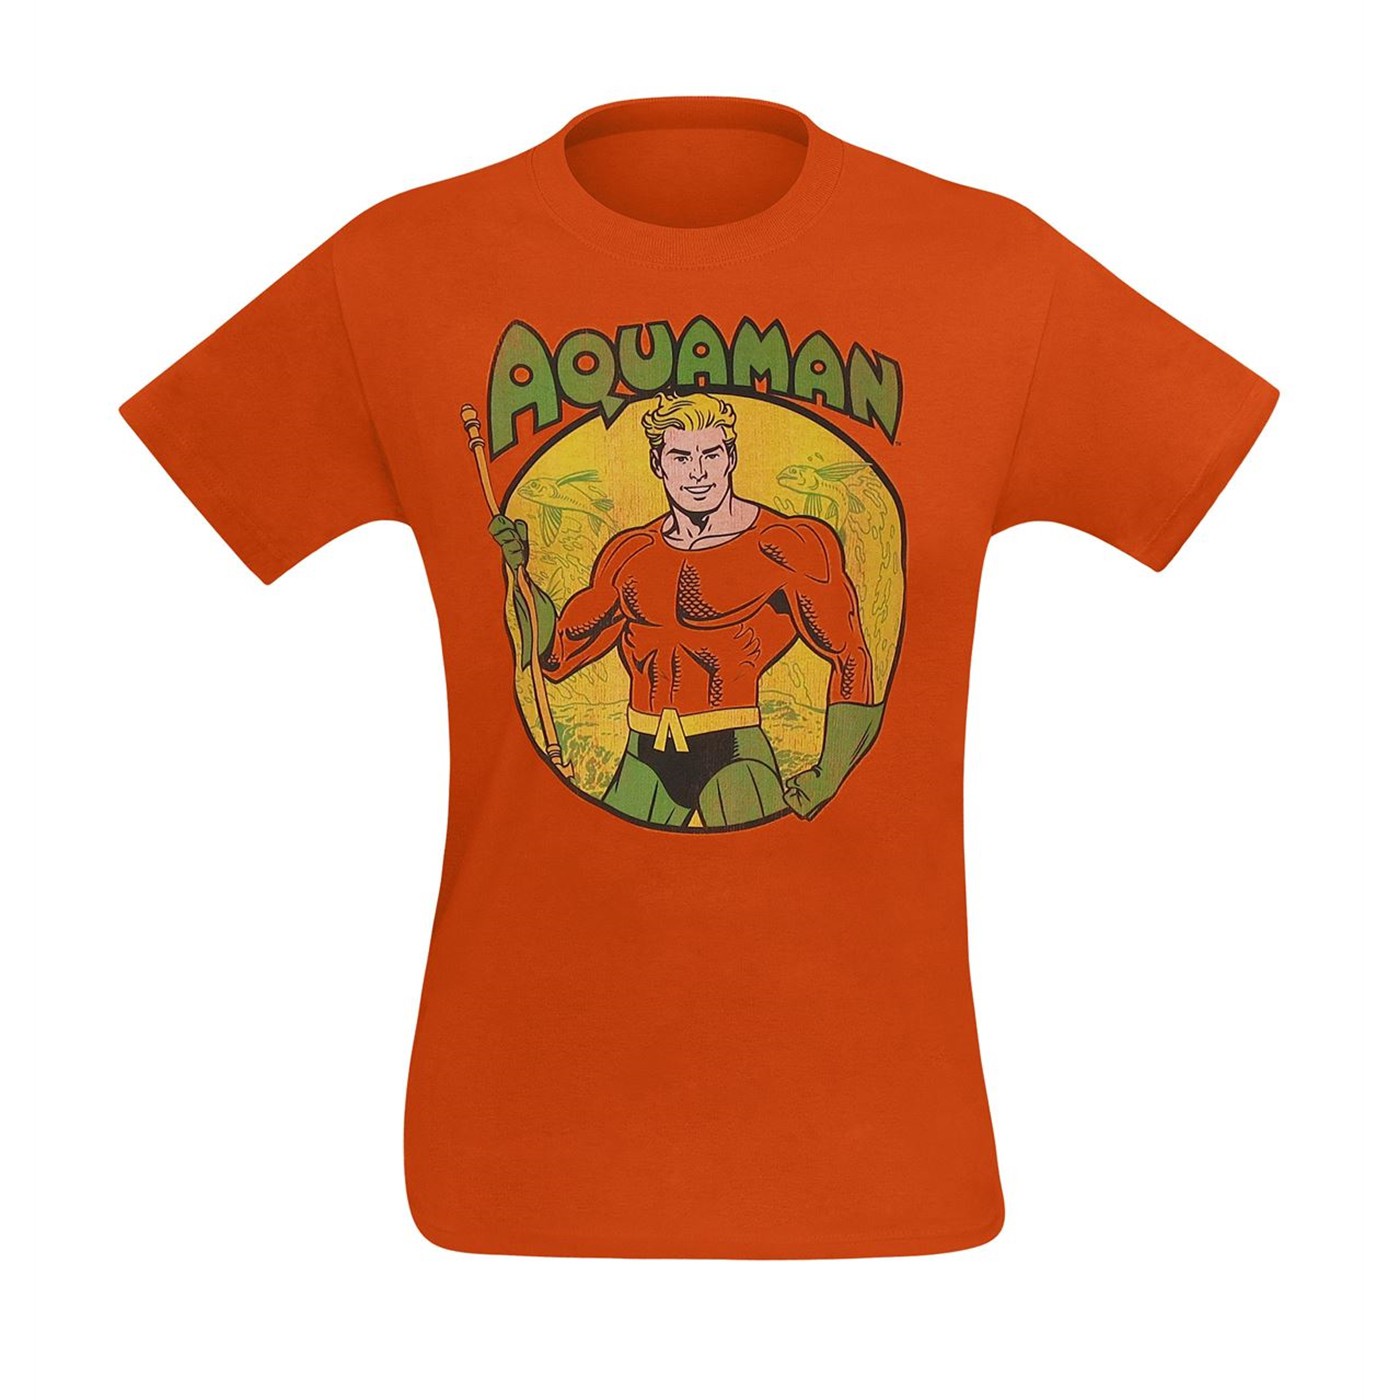 Aquaman Trident Bearing Circle Orange T-Shirt